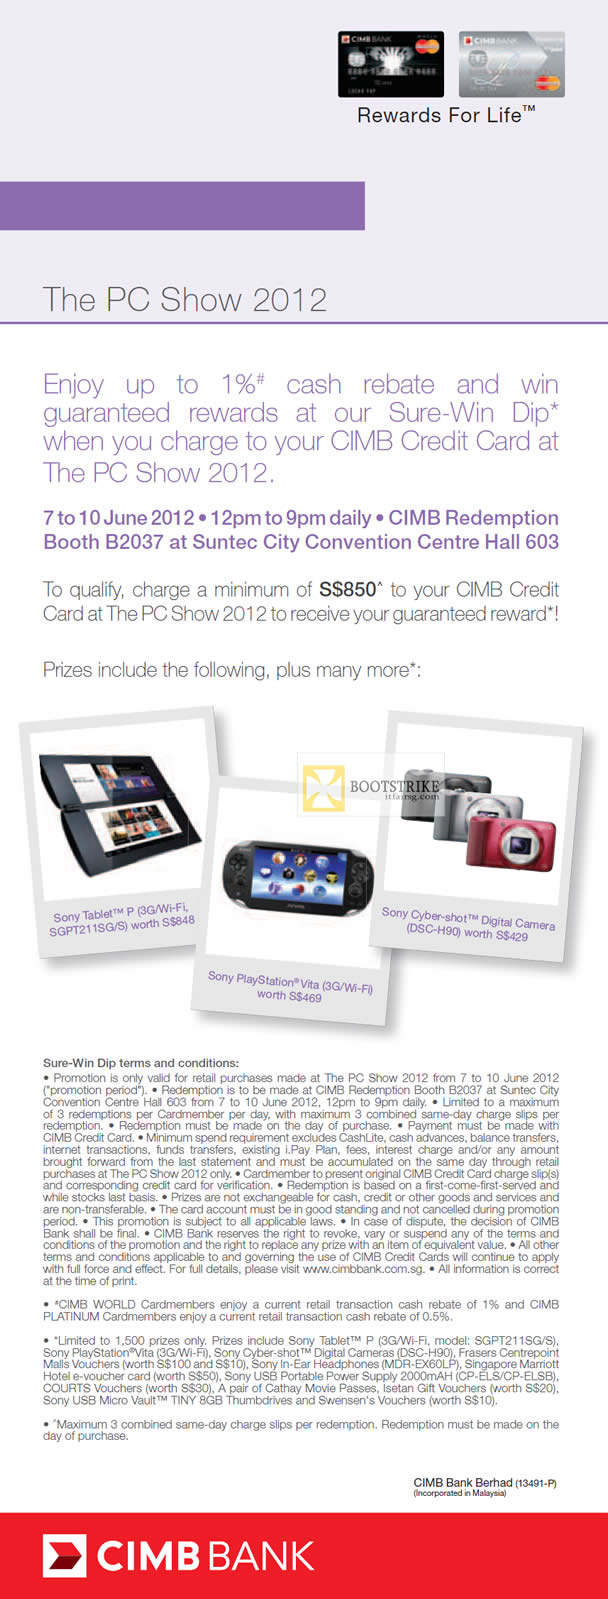 PC SHOW 2012 price list image brochure of CIMB Credit Card Cash Rebate, Rewards, Sure-Win Dip